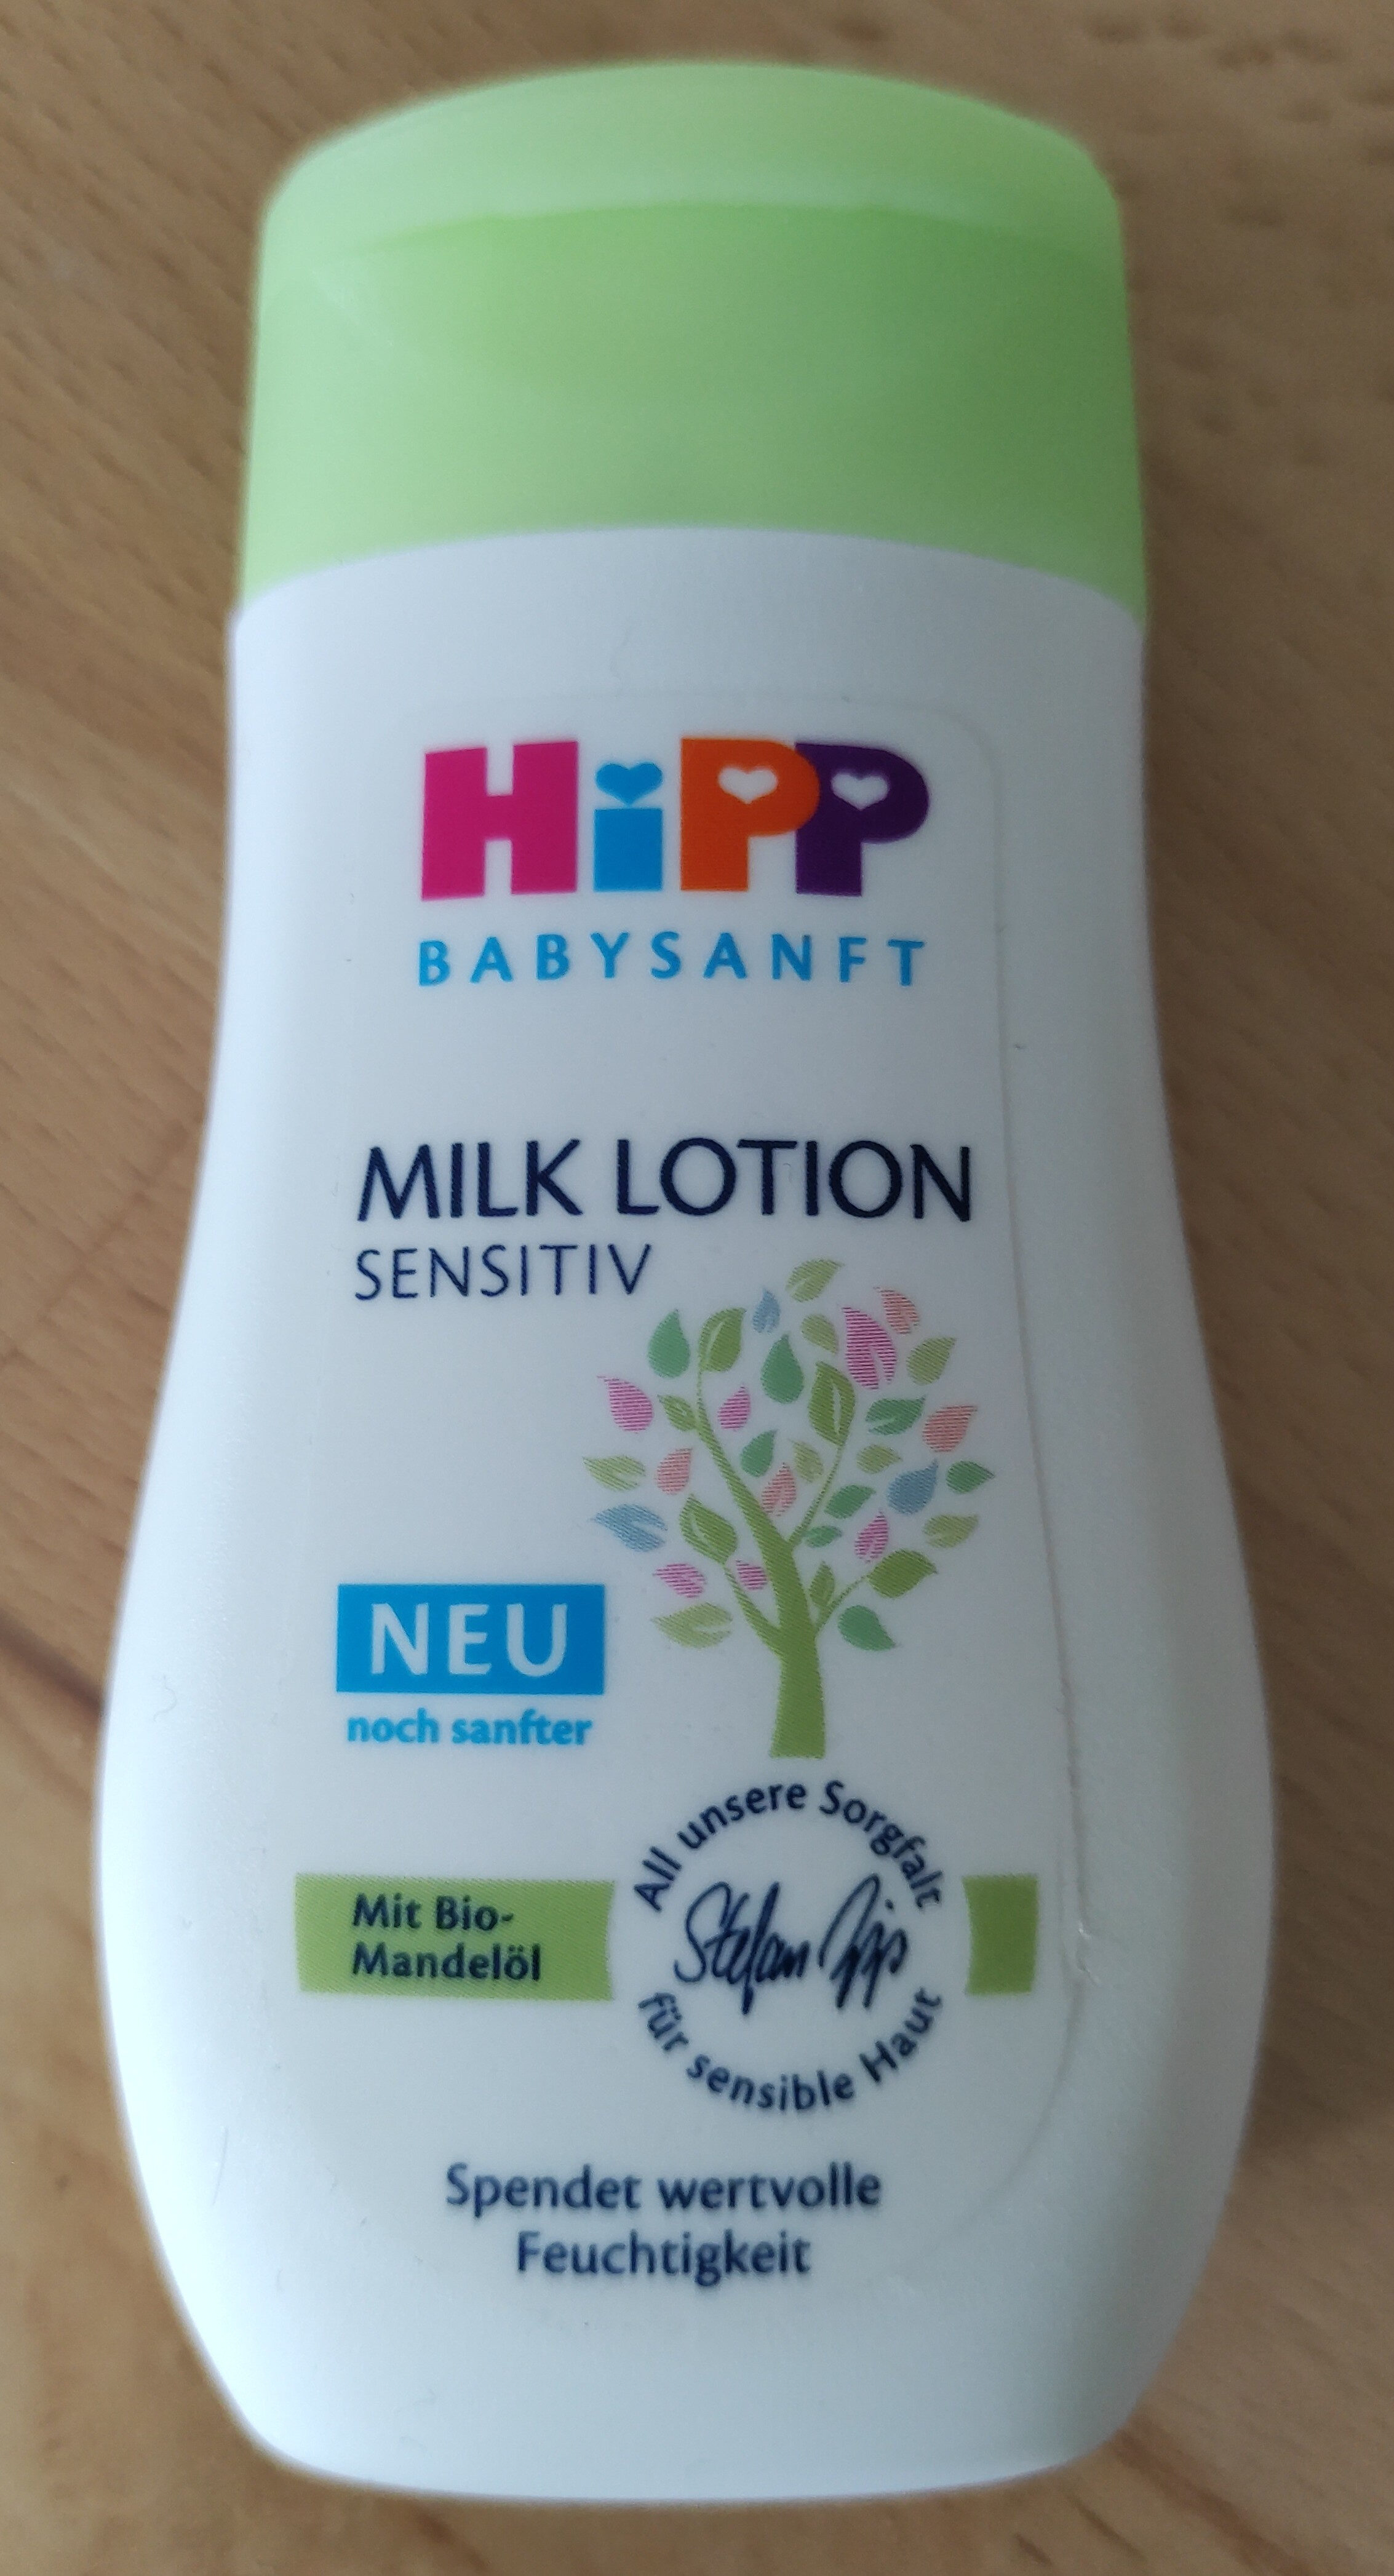 Milk Lotion Sensitiv - Produkt - de